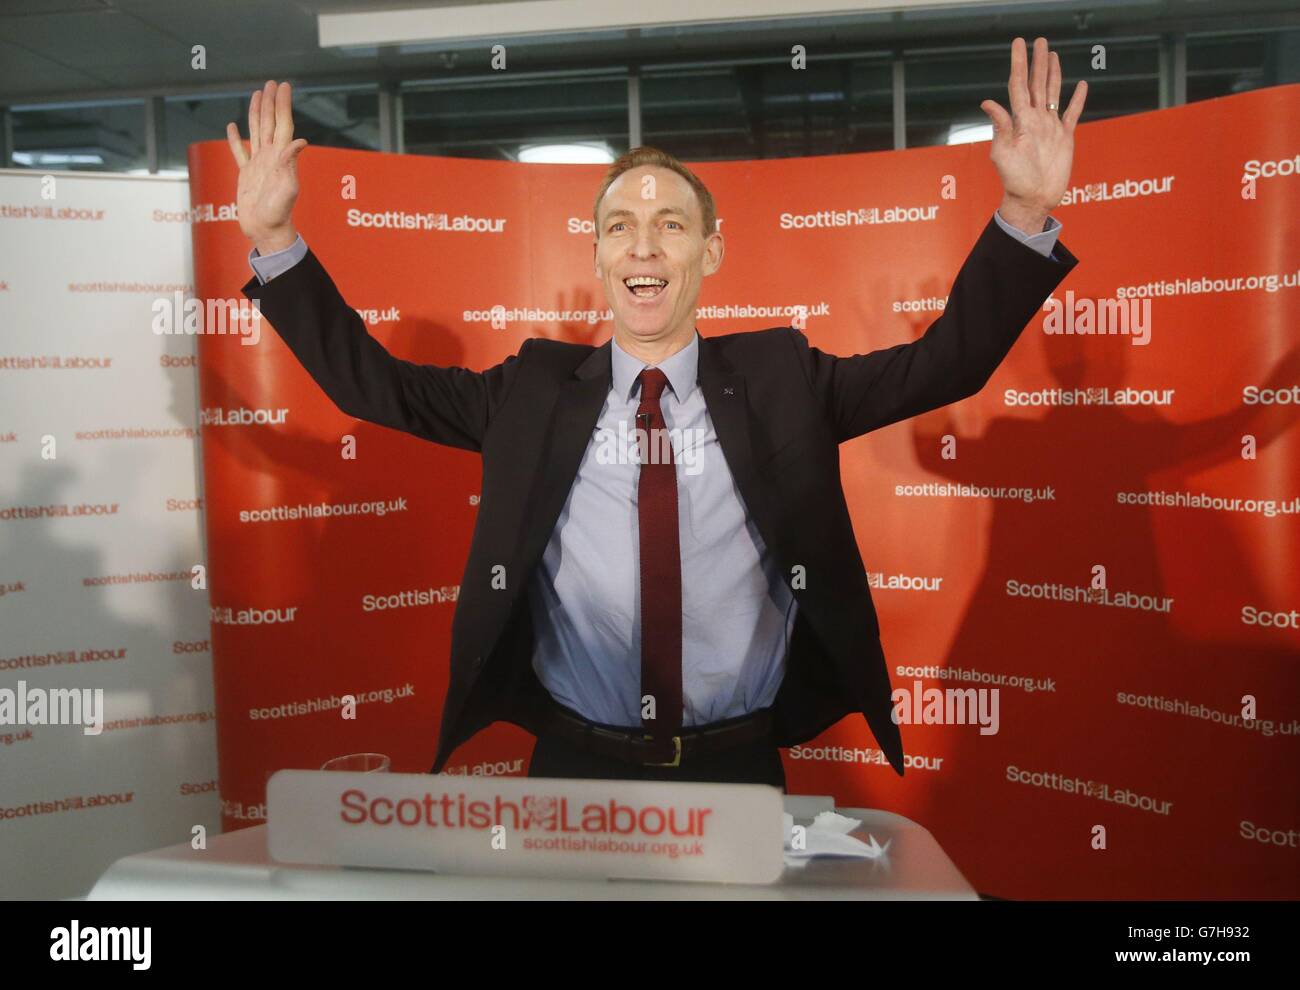 Jim Murphy all'Emirates Stadium di Glasgow dopo l'annuncio di essere stato eletto come nuovo leader del Partito laburista scozzese. Foto Stock